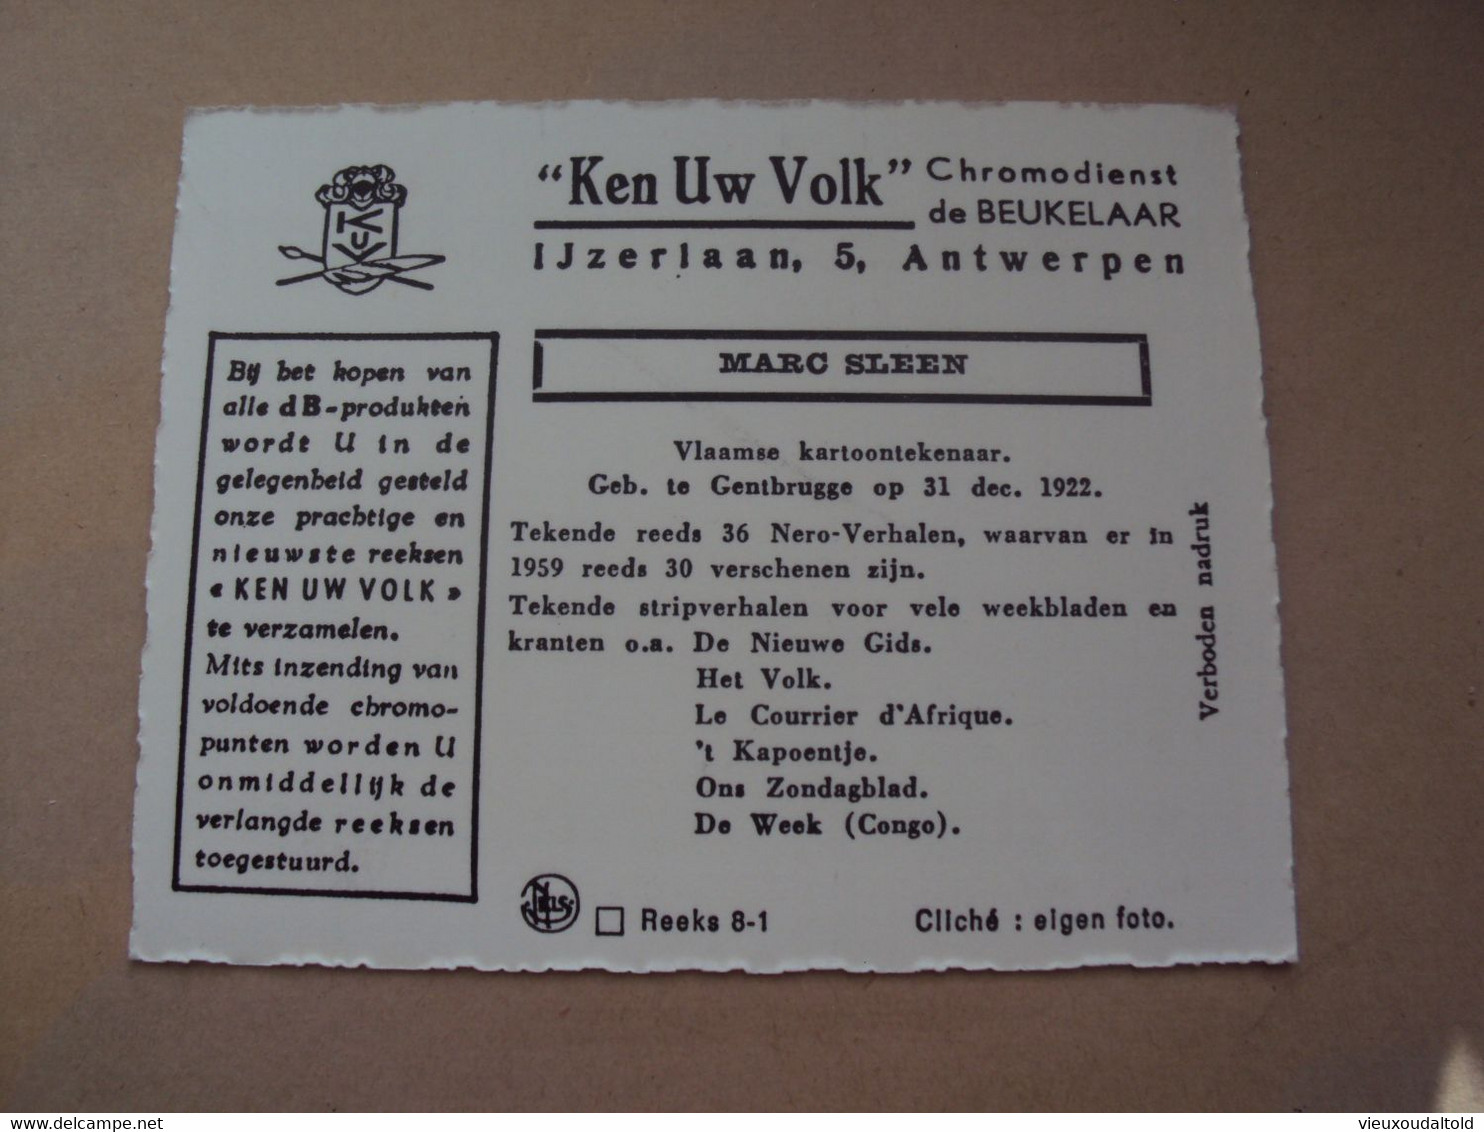 Fotokaartje   7 X 9 Cm  " Ken Uw Volk "    MARC  SLEEN      Onberispelijke Kaart / Carte Impeccable - De Beukelaer